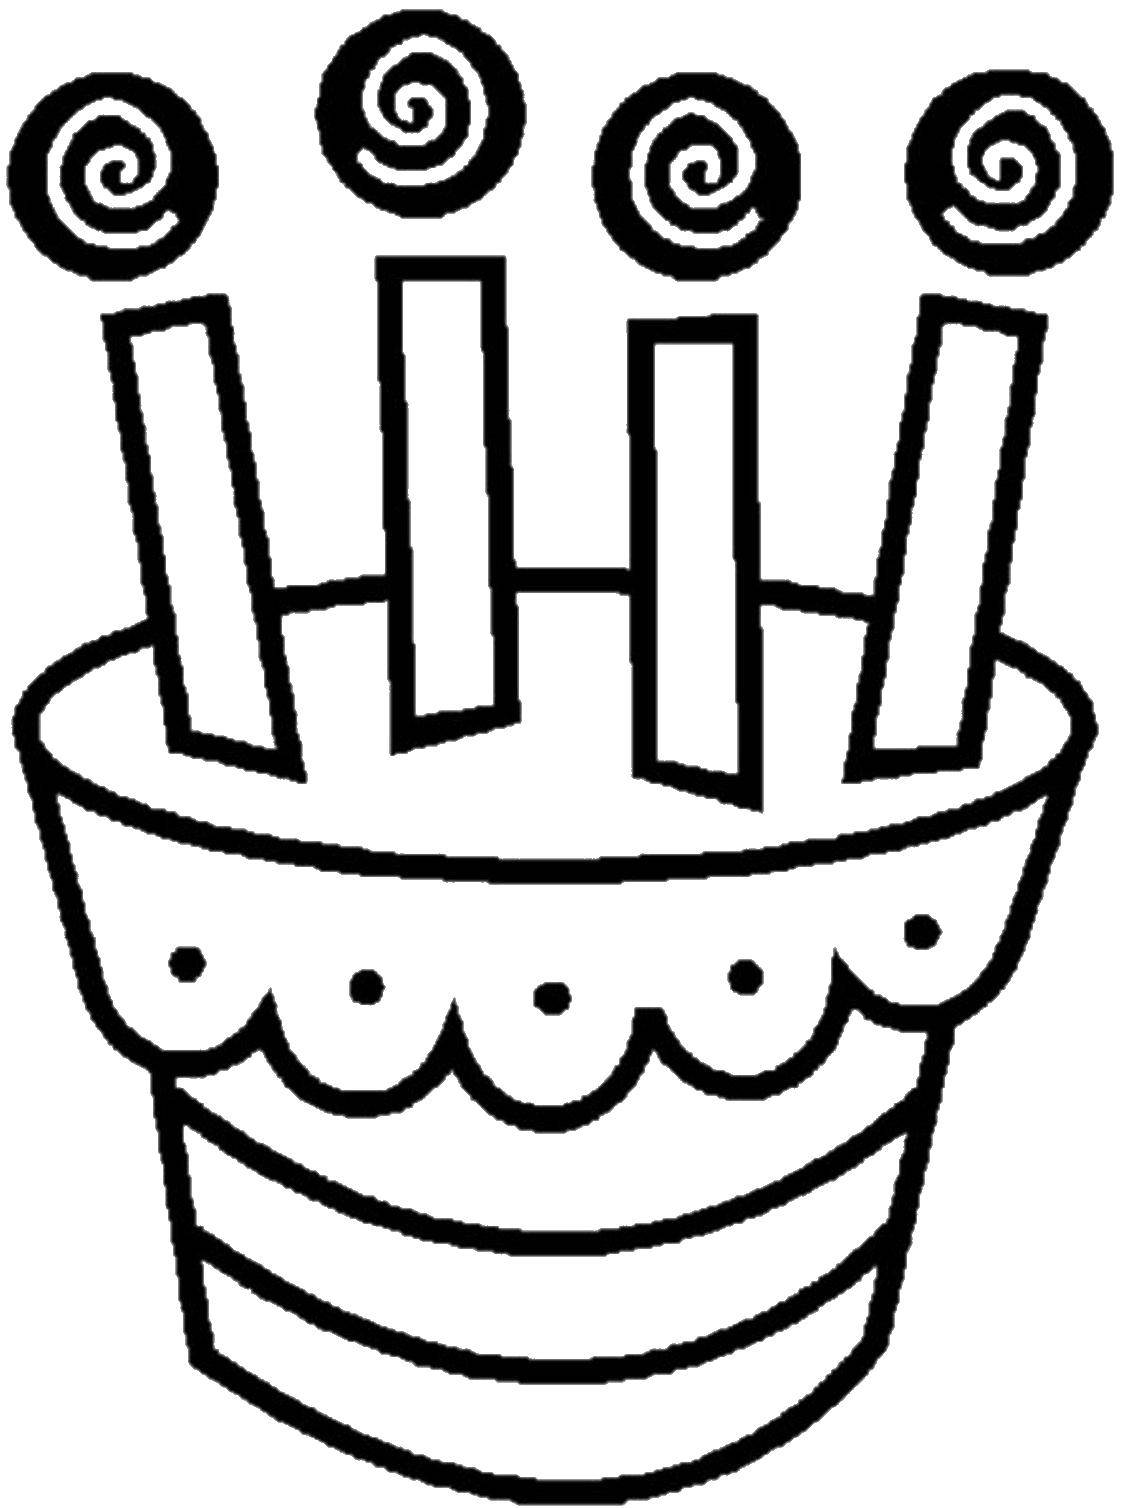 Раскраски тортов, свечек и других сладостей для детей - скачать бесплатно и раскрасить онлайн (торты, торт, свечки)